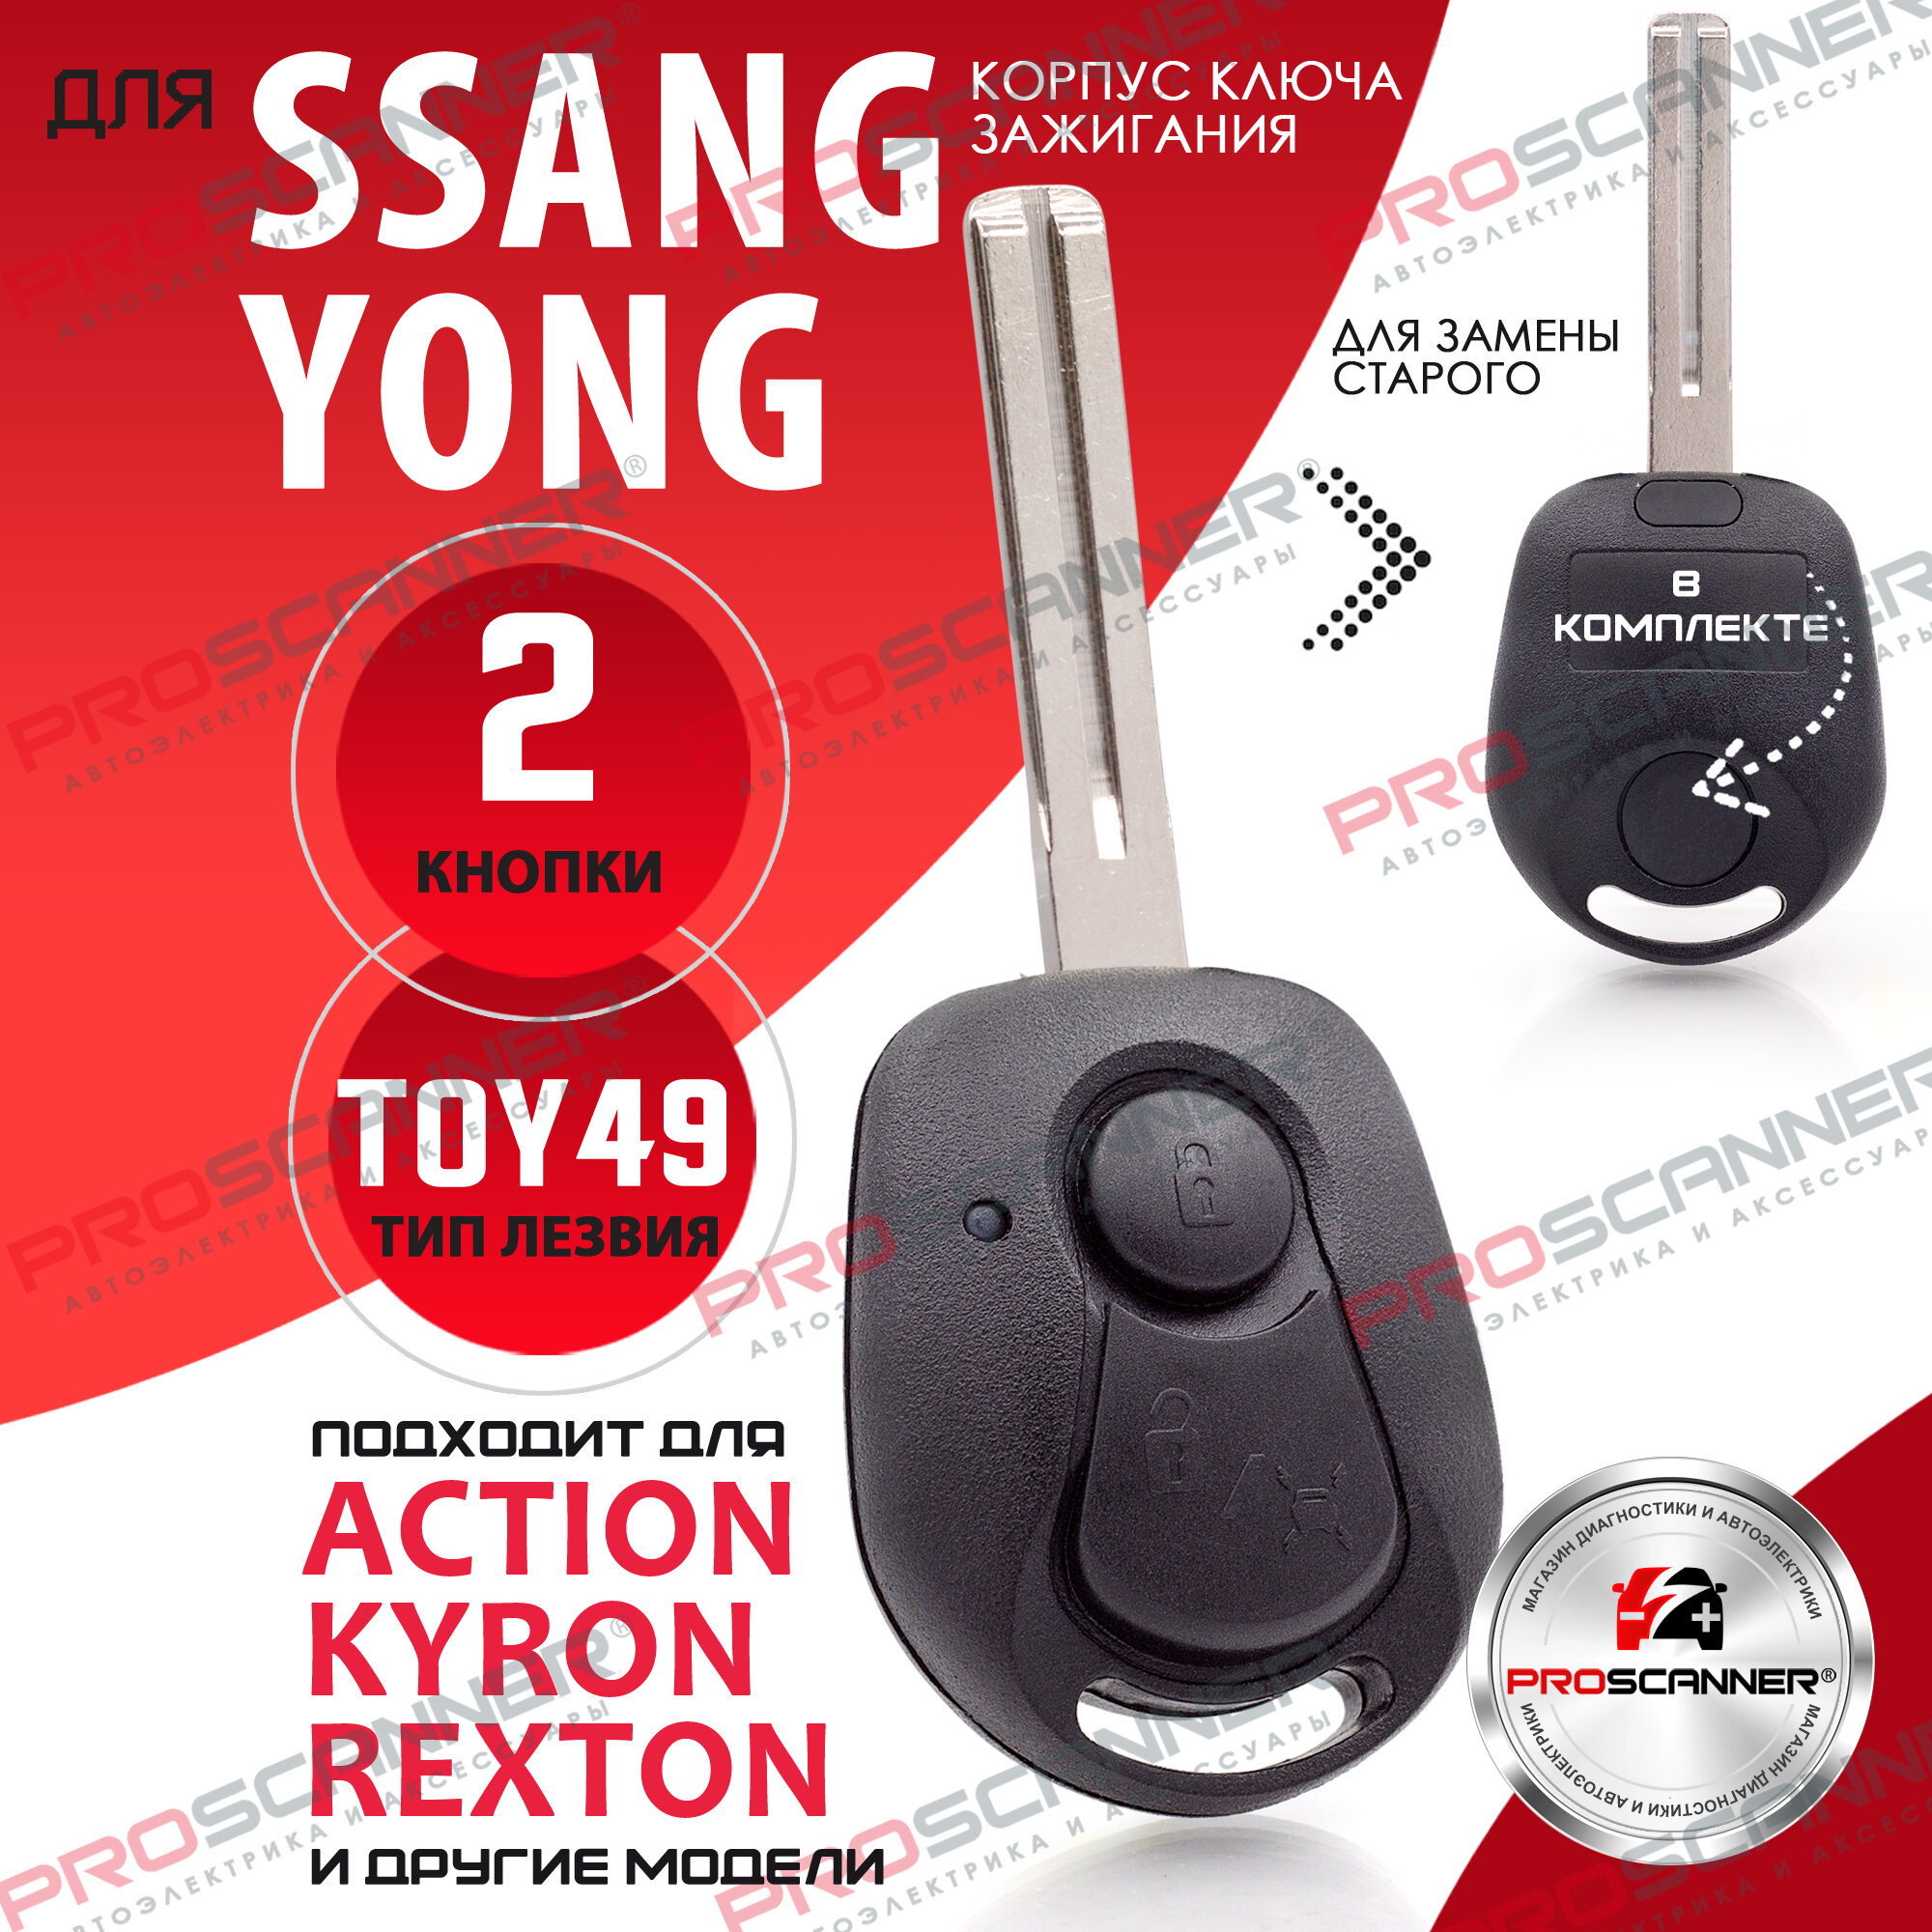 Корпус ключа зажигания для SsangYong лезвие TOY49 - 2 кнопки / Ключ автомобильный Санг Йонг